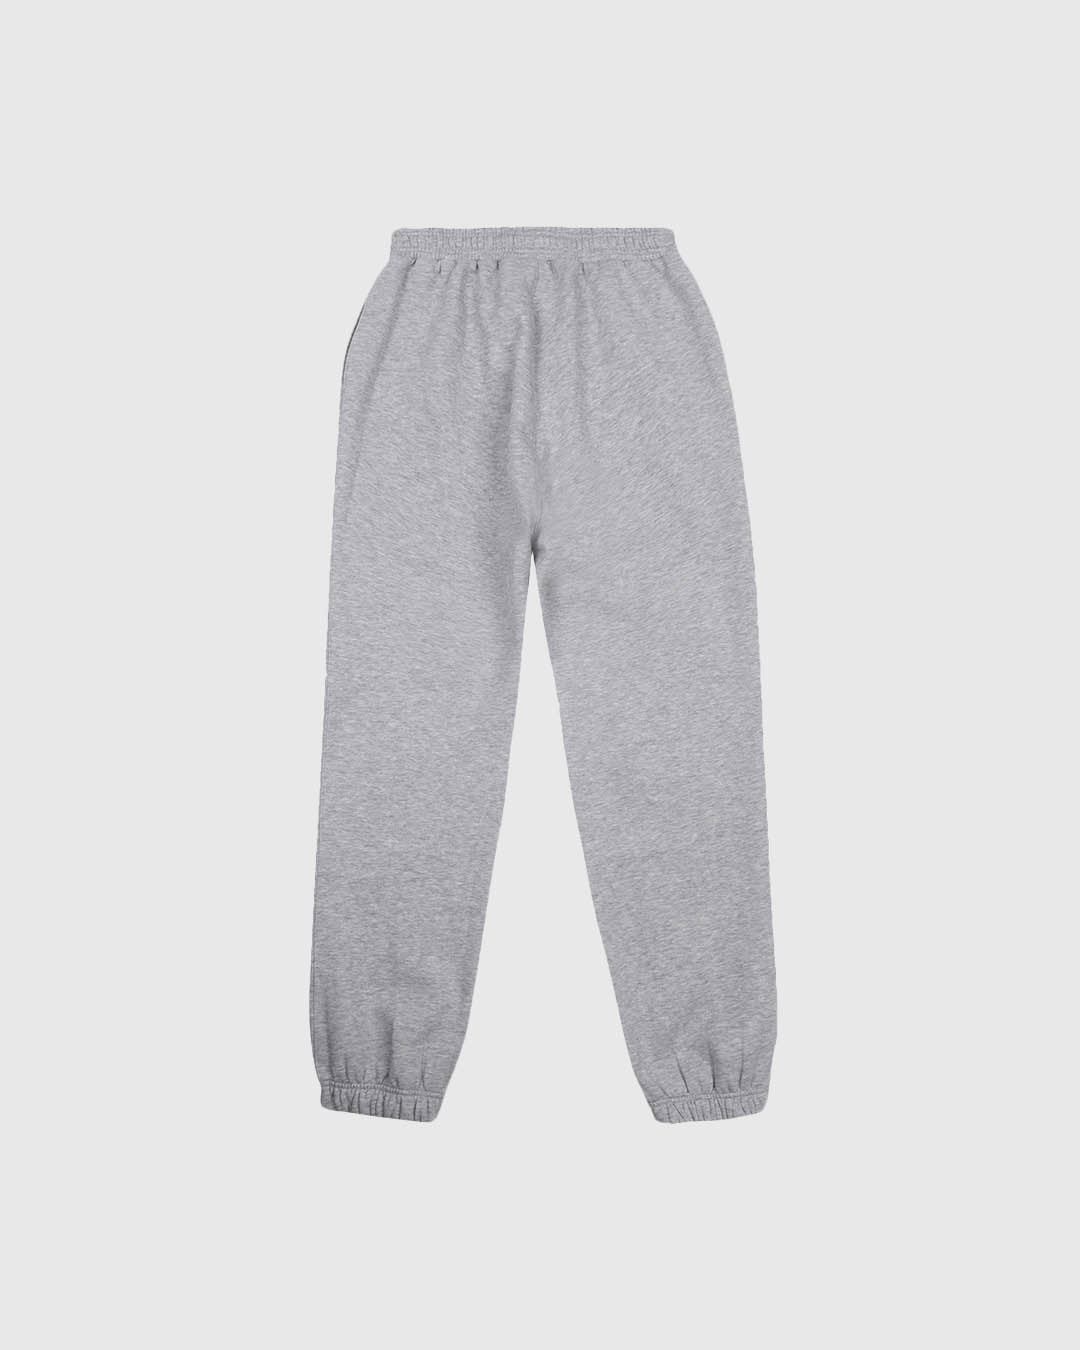 PFC: 002-4 - Men's Sweatpants - Grey Marl